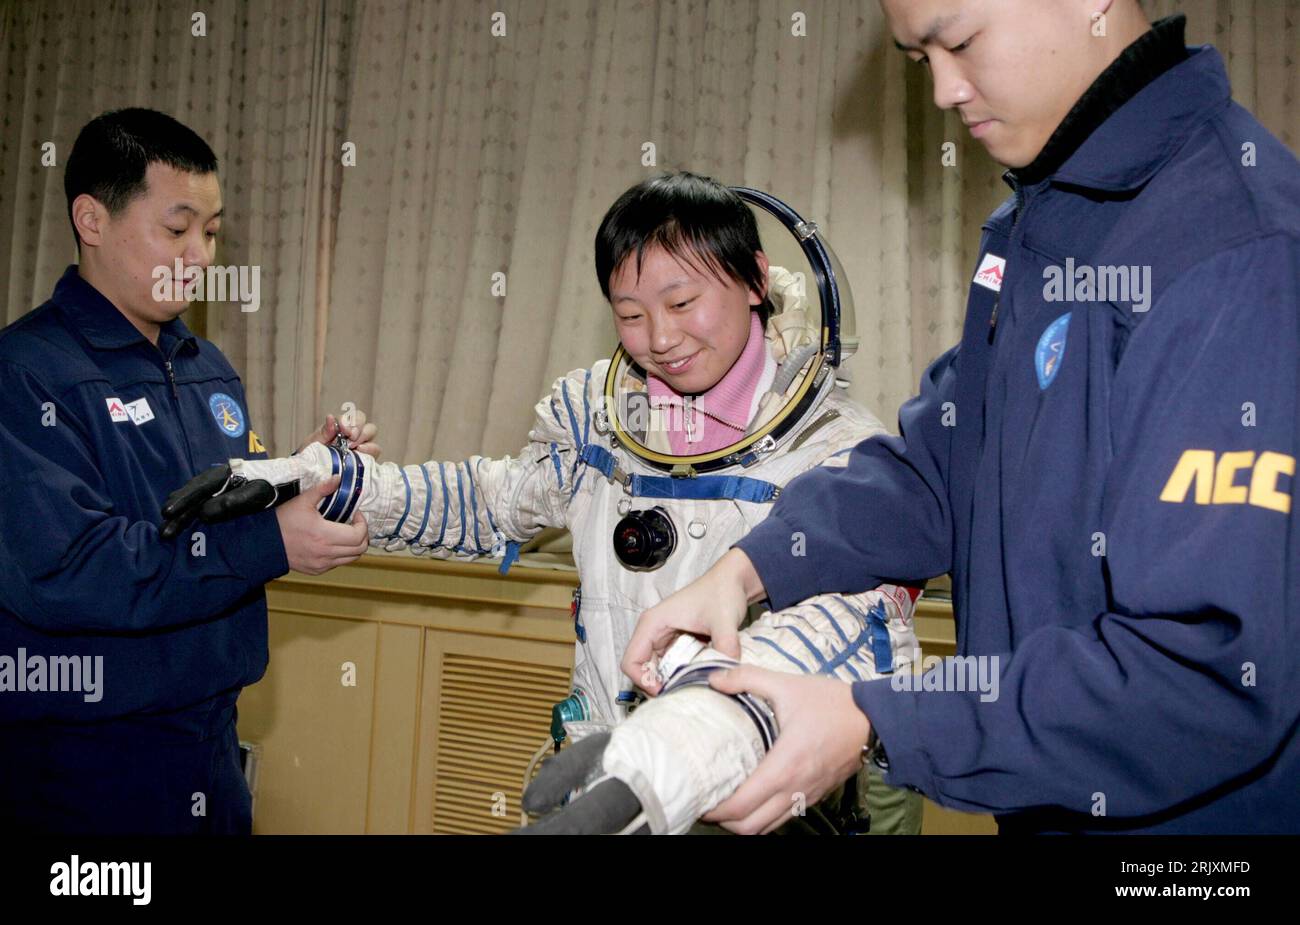 Bildnummer: 52316950  Datum: 02.01.2008  Copyright: imago/Xinhua Taikonauten-Nachwuchskraft probiert einen Raumanzug an im Weltraumzentrum in Peking - PUBLICATIONxNOTxINxCHN, Personen , optimistisch , premiumd; 2008, Peking, China, CNSA, Taikonaut, Astronaut, Astronauten, Kosmonaut, Kosmonauten, Spaceflight Scientific Research Center, Trainee, Nachwuchskraft; , quer, Kbdig, Gruppenbild,  ,  , Asien o0 Astronomie, Wissenschaft, Raumfahrt, Weltraumforschung Stock Photo